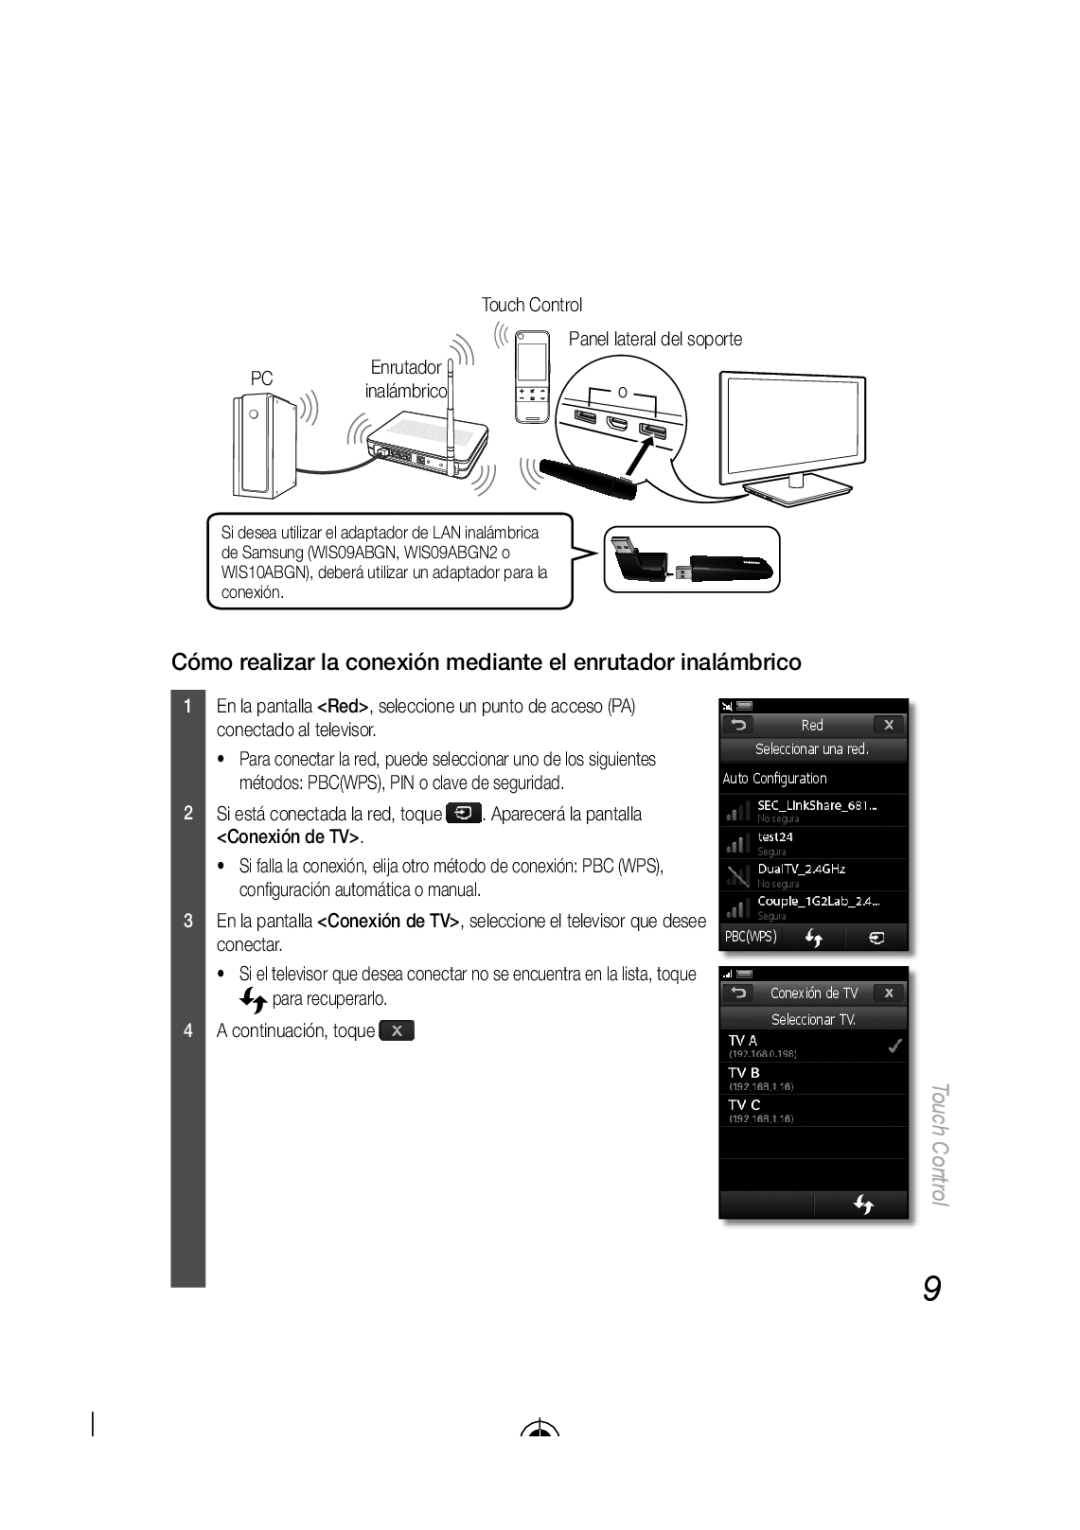 Samsung LED-C9000 user manual Cómo realizar la conexión mediante el enrutador inalámbrico, Conexión de TV, Touch Control 